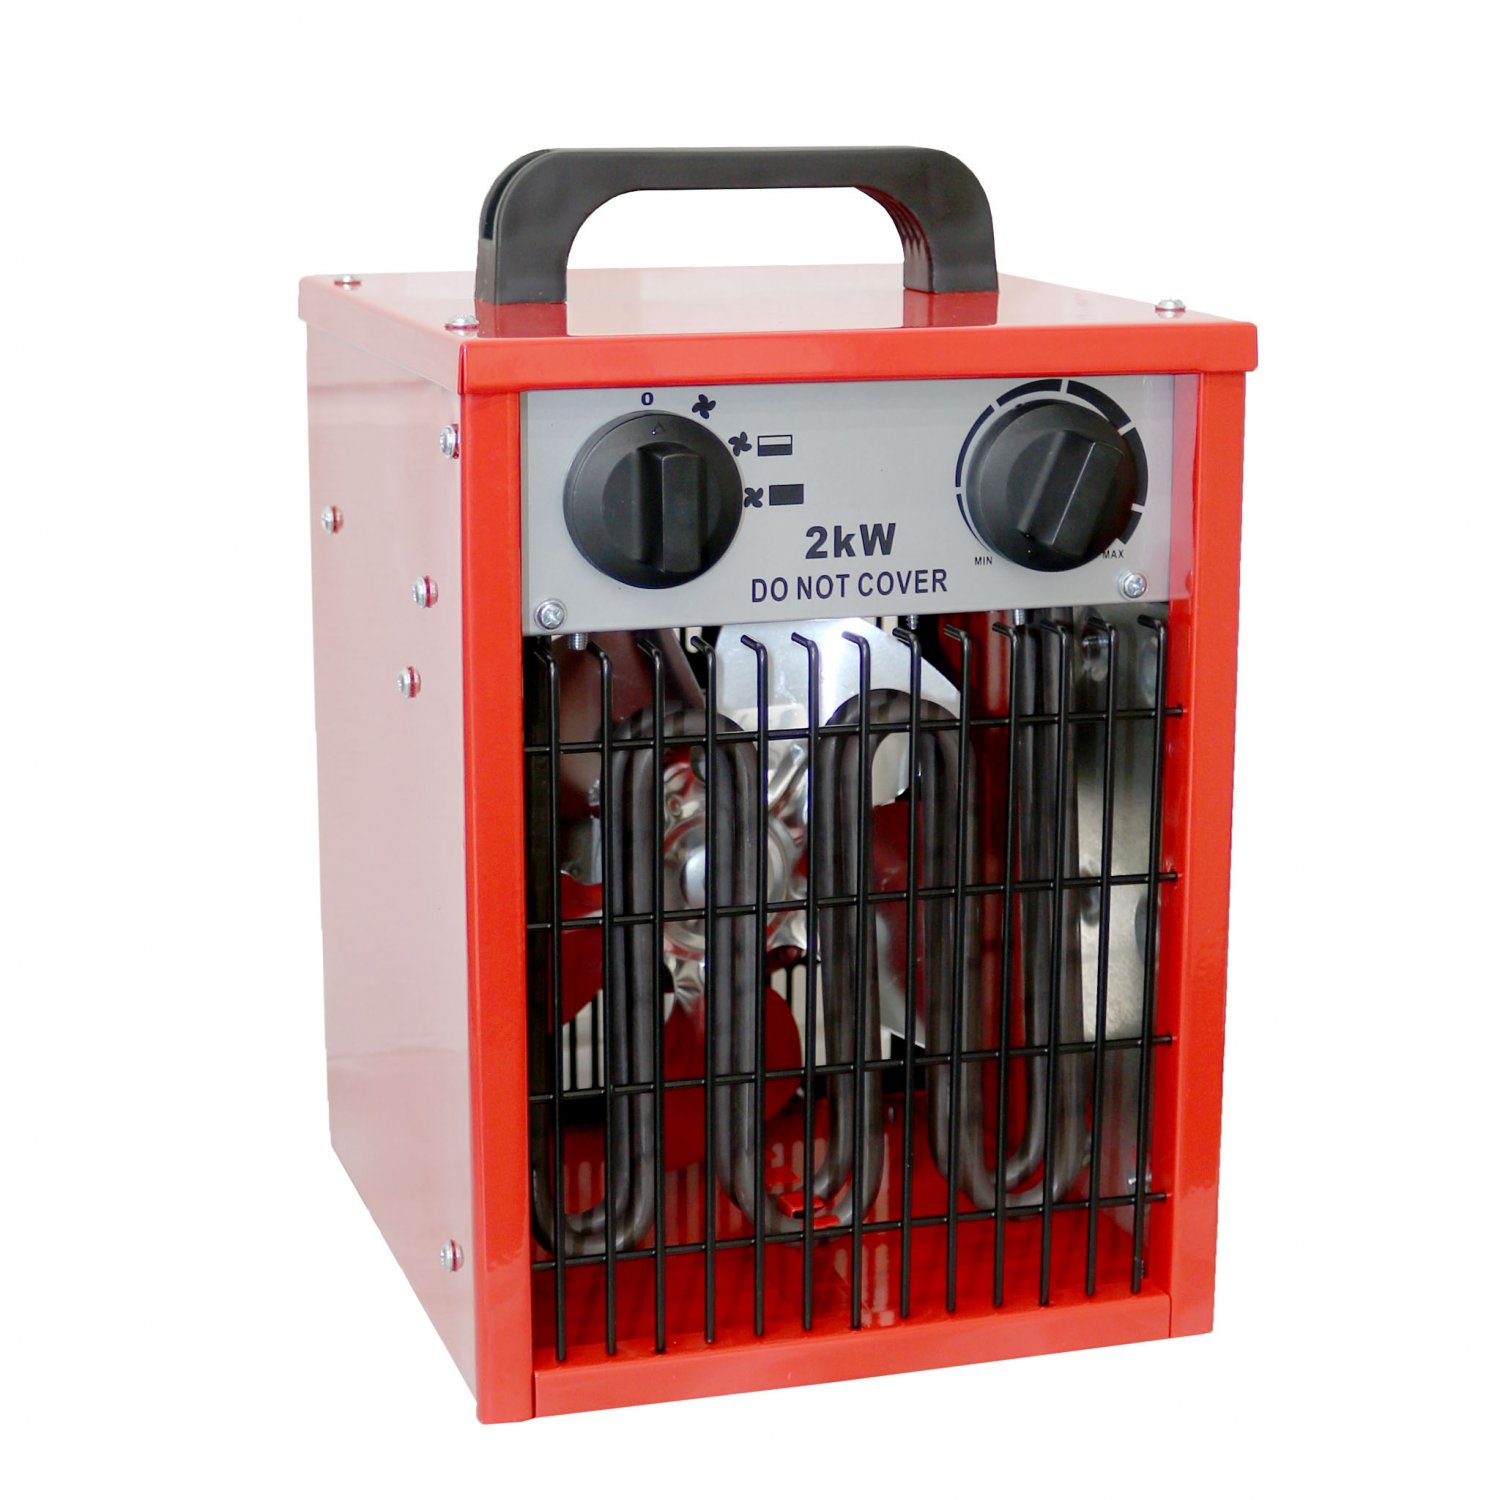 2kW Electric Industrial Workshop Garage Space Fan Heater